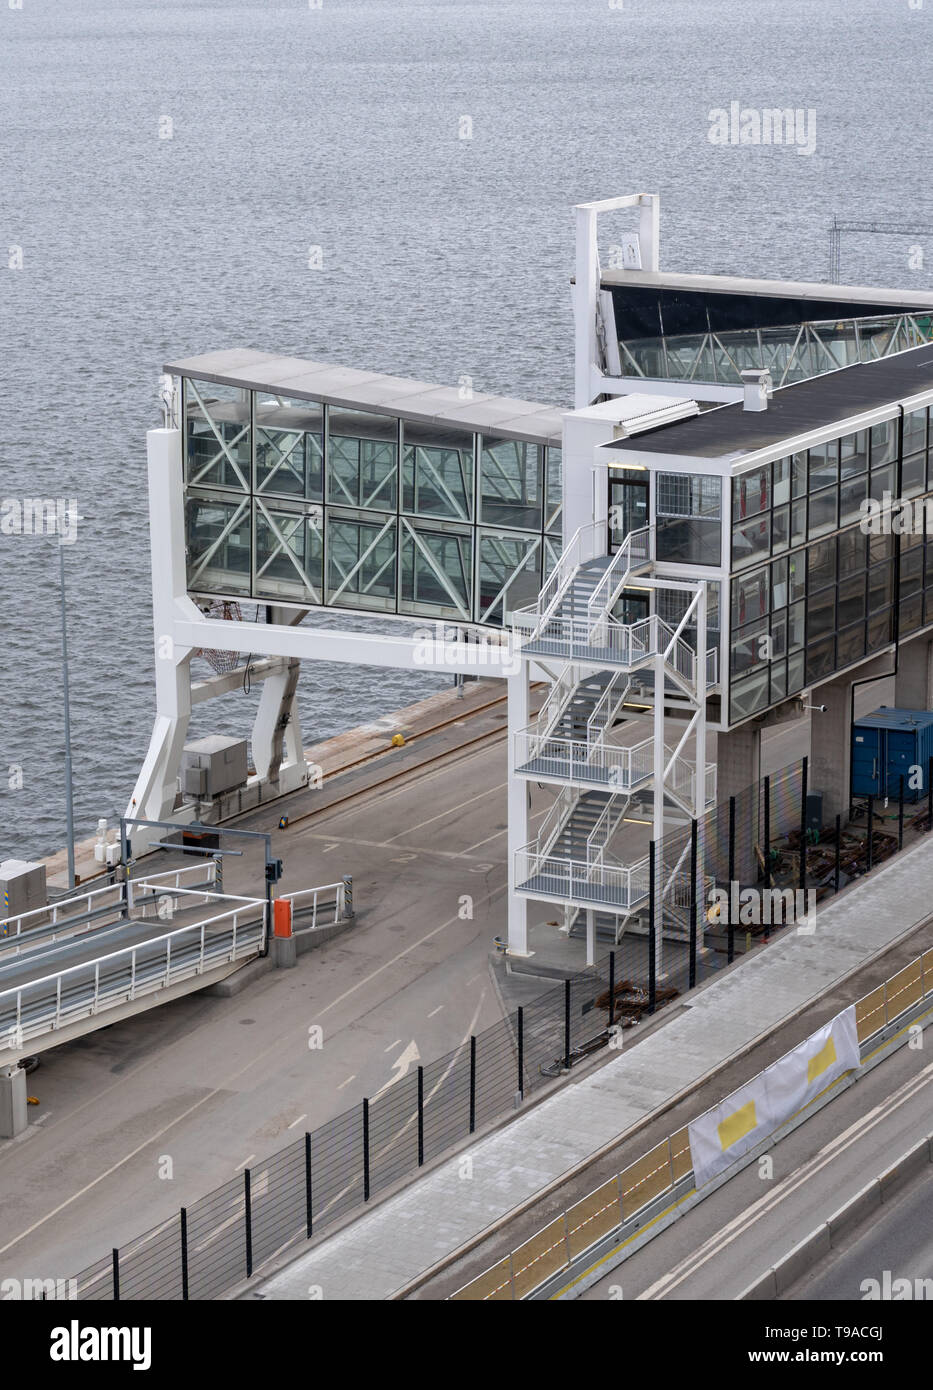 La borne des navires dans le port avec passerelle avec de grandes fenêtres, Stockholm Suède Banque D'Images